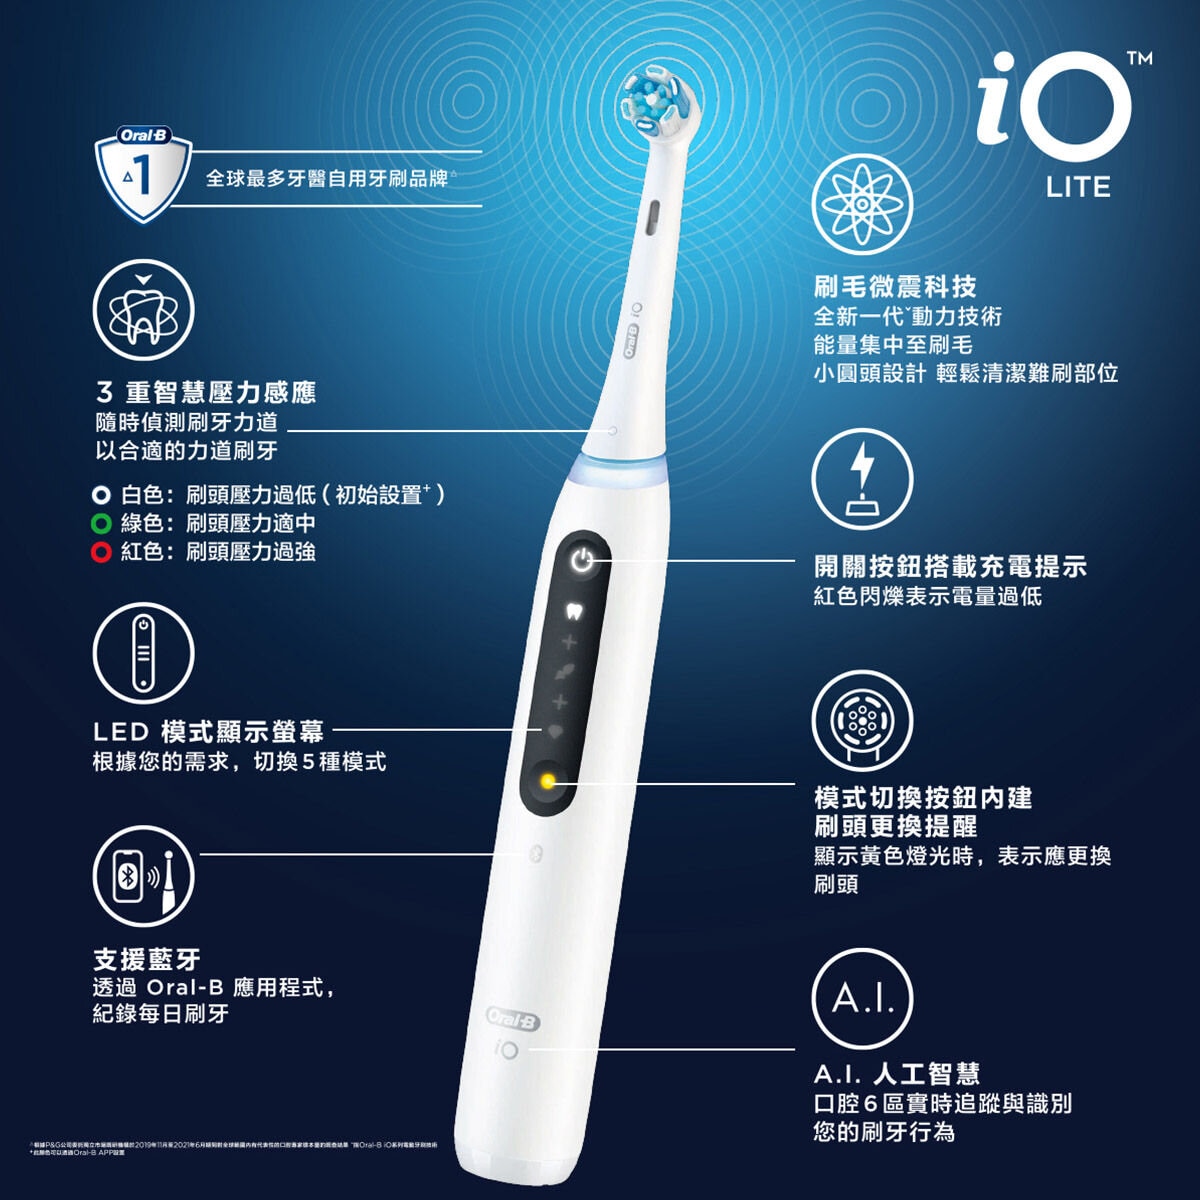 歐樂B iO LITE 微震科技充電式電動牙刷 2握柄/6刷頭